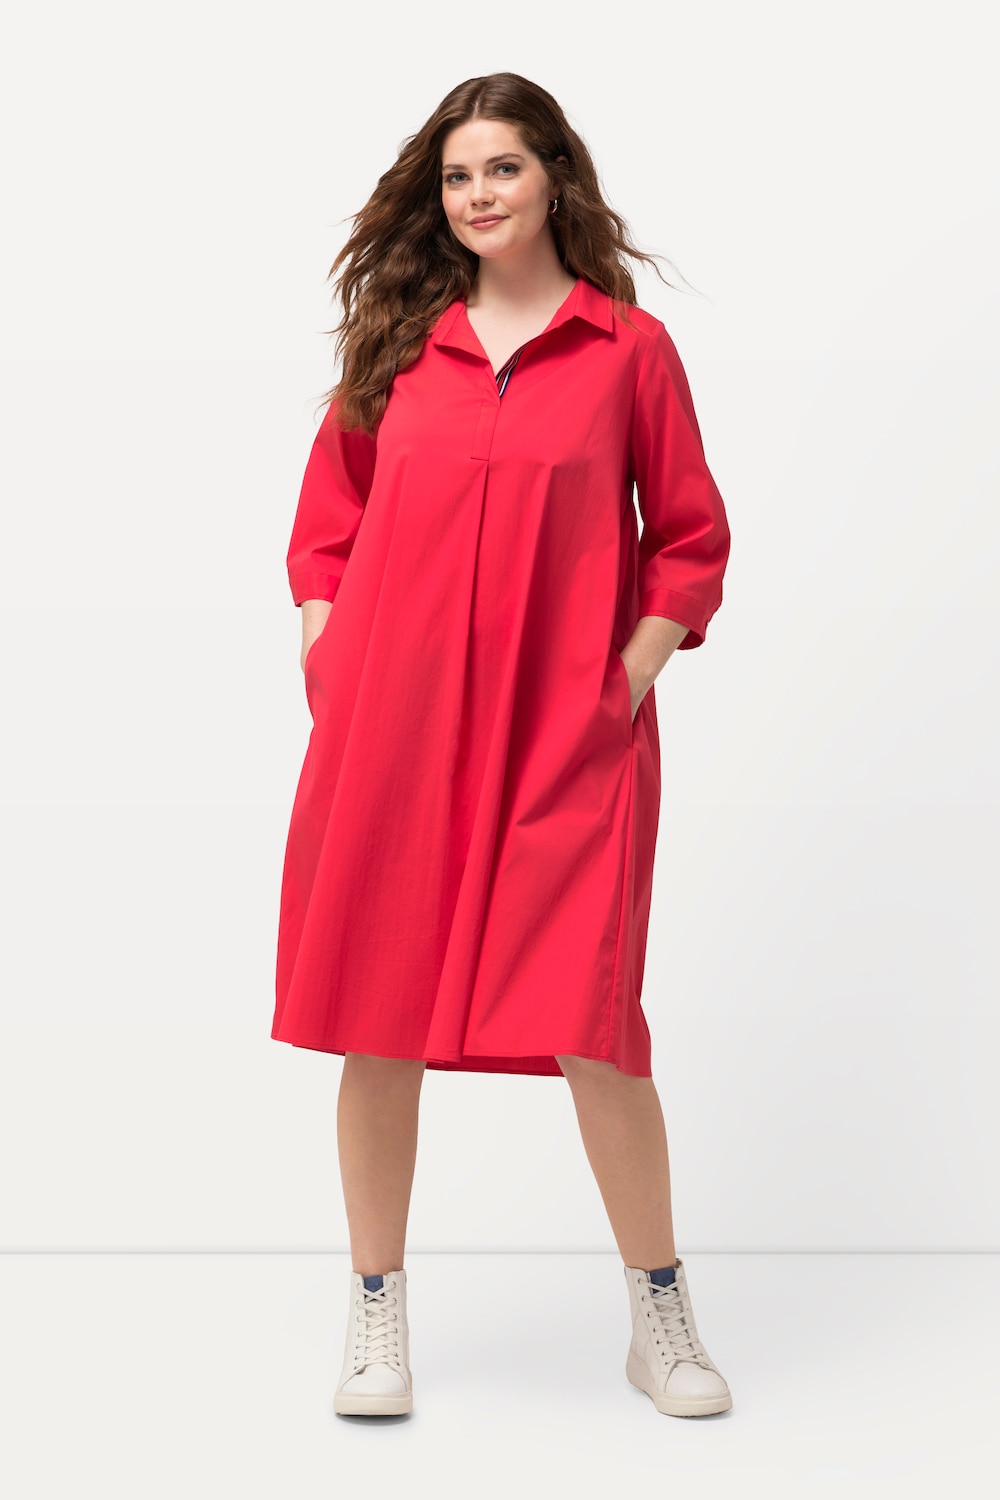 grandes tailles robe tunique à manches 3/4, femmes, rouge, taille: 56/58, coton/fibres synthétiques, ulla popken